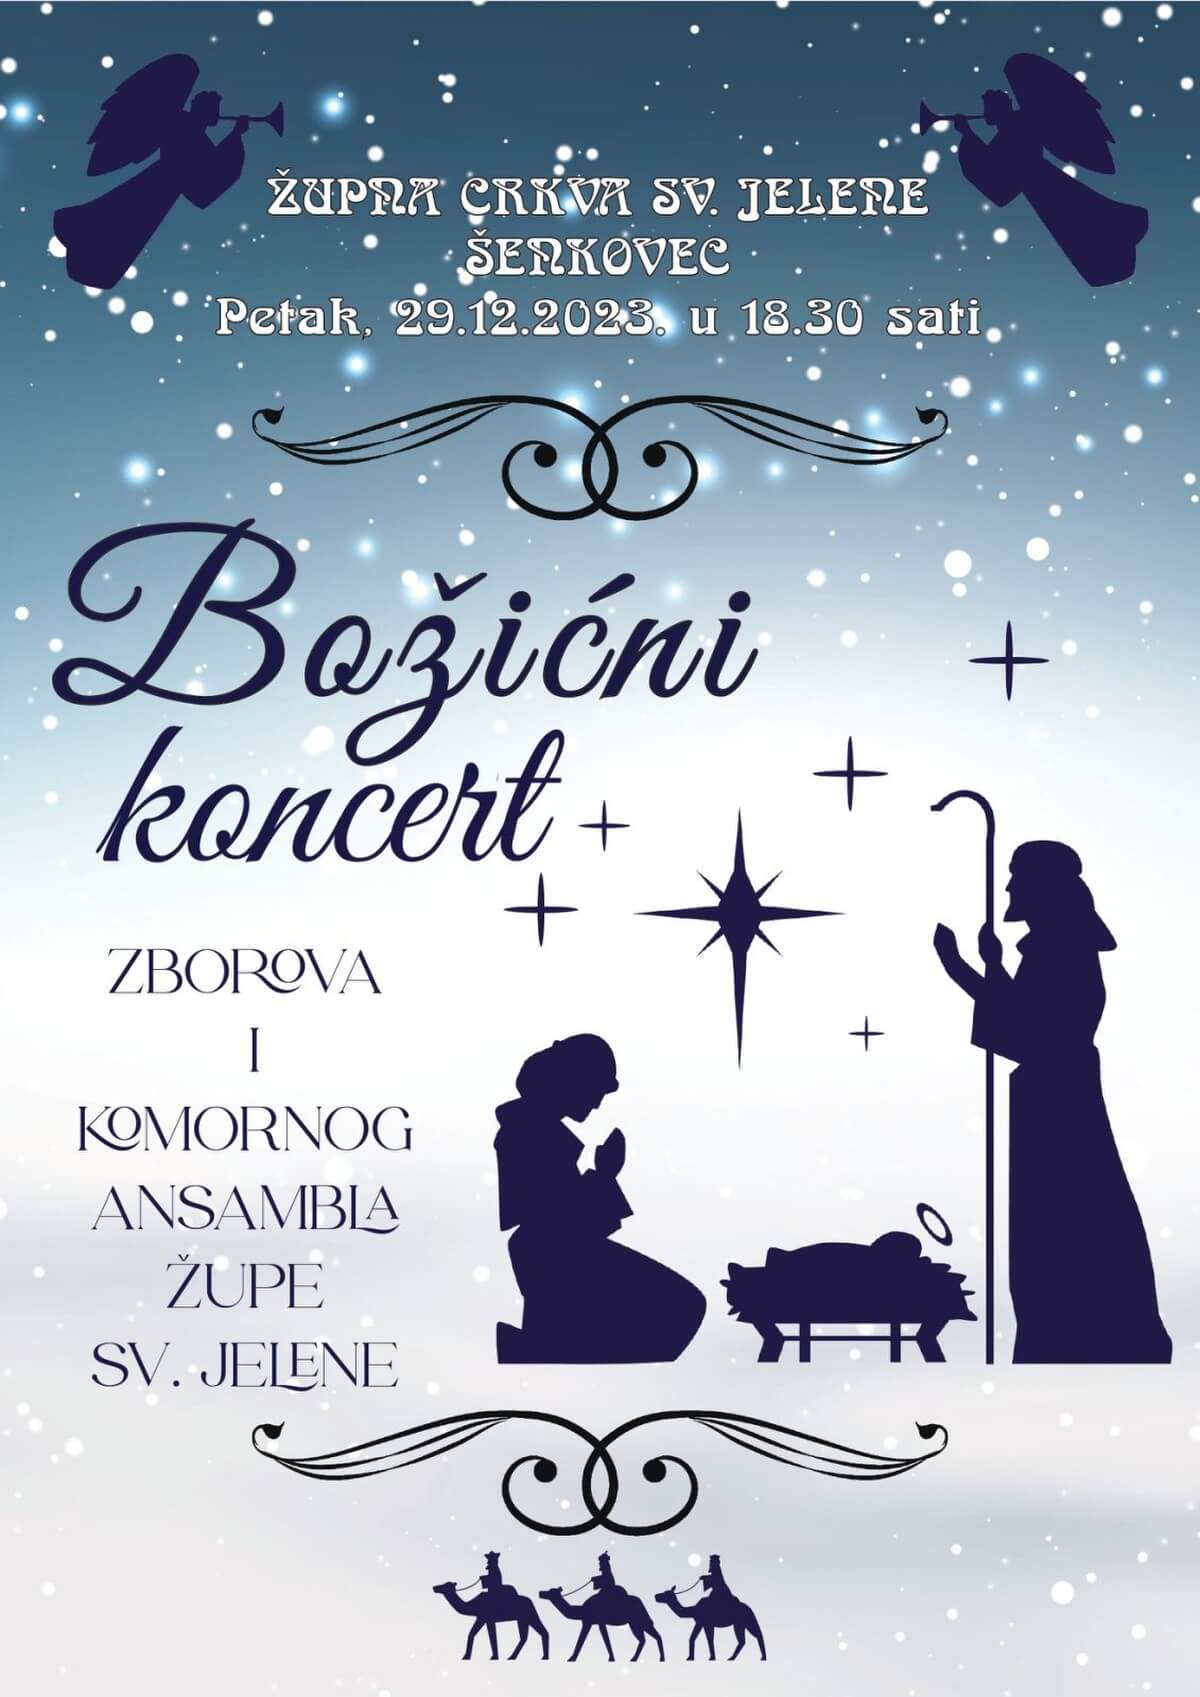 Najava za Božićni koncert u Župi svete Jelene Šenkovec, 29. prosinca u 18:30 sati